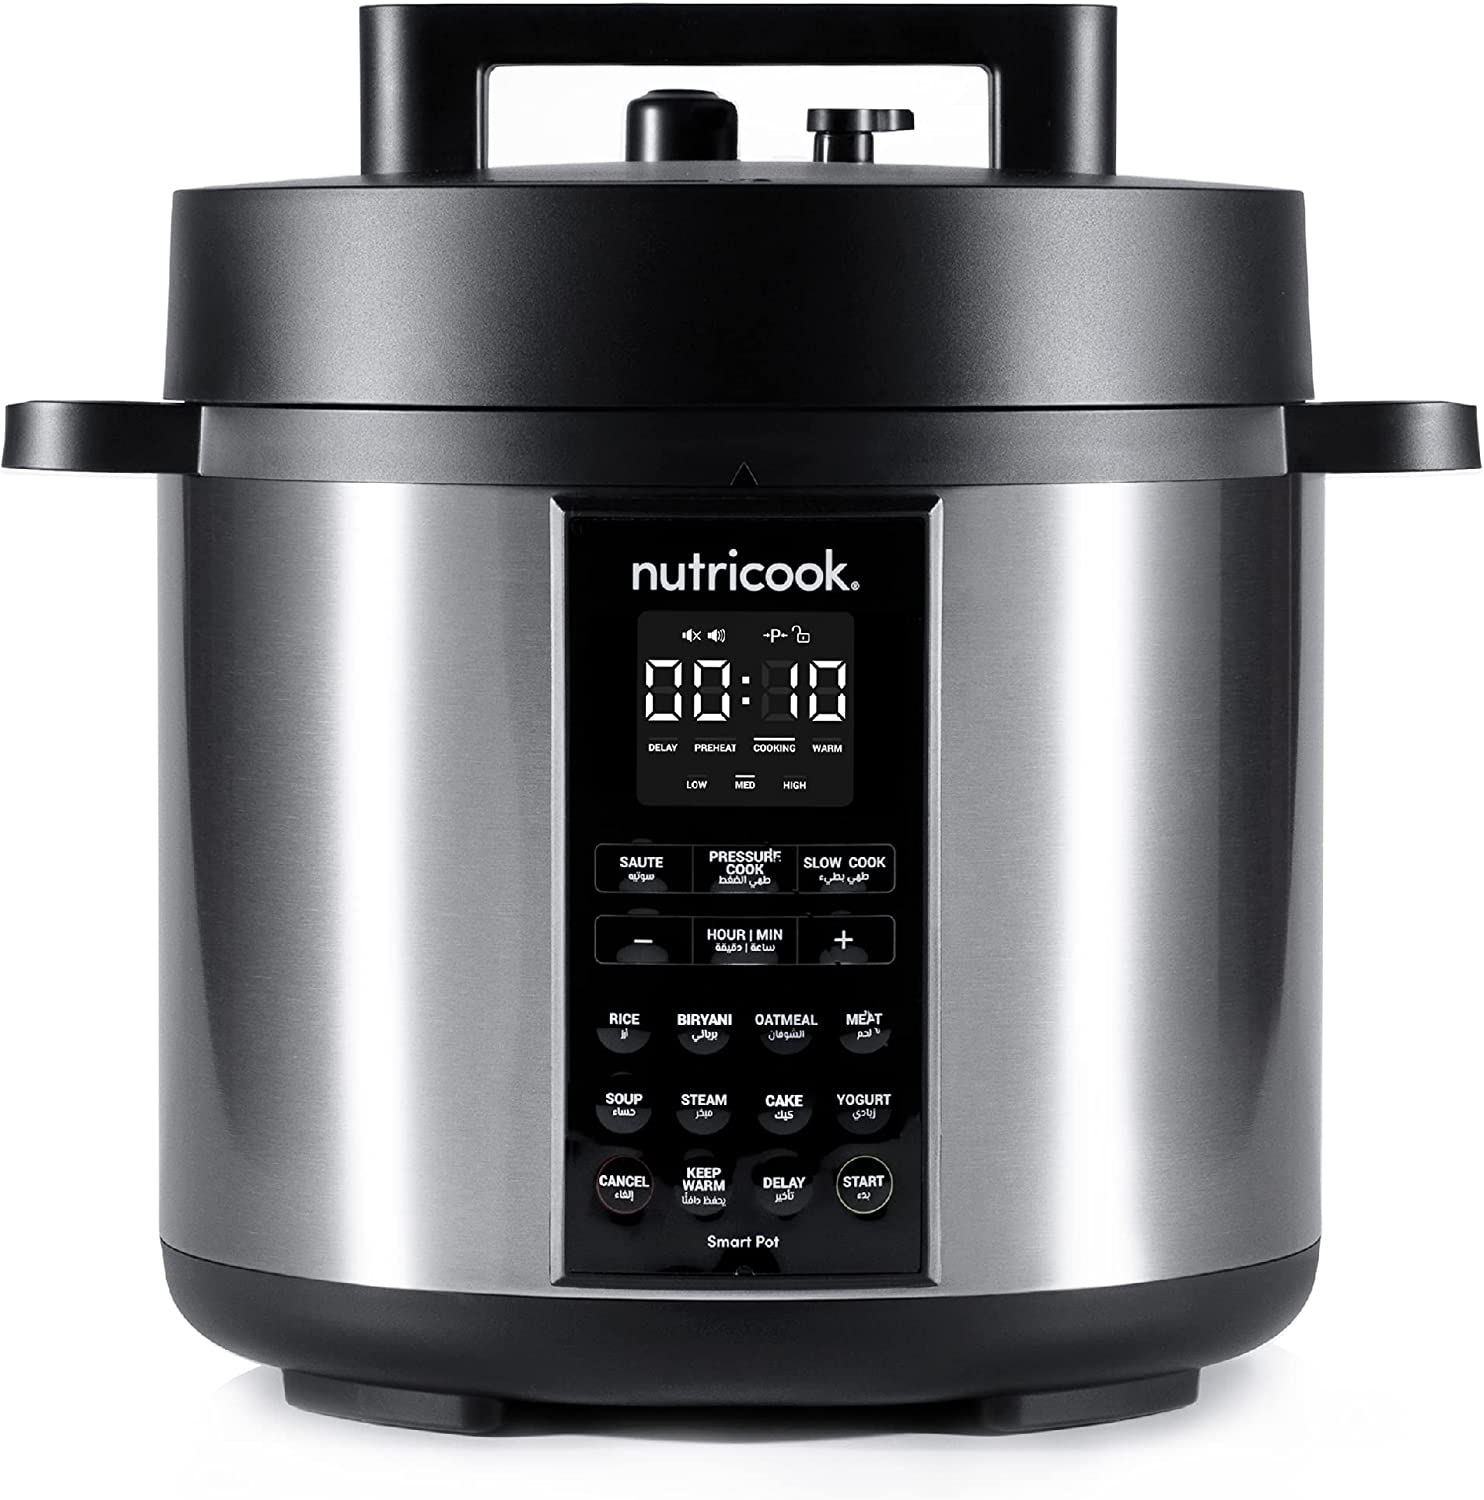 زودپز برقی نوتریکوک مدل Nutricook Smart Pot 2 1200 Watts 9 In 1 - ارسال ۱۰ الی ۱۵ روز کاری